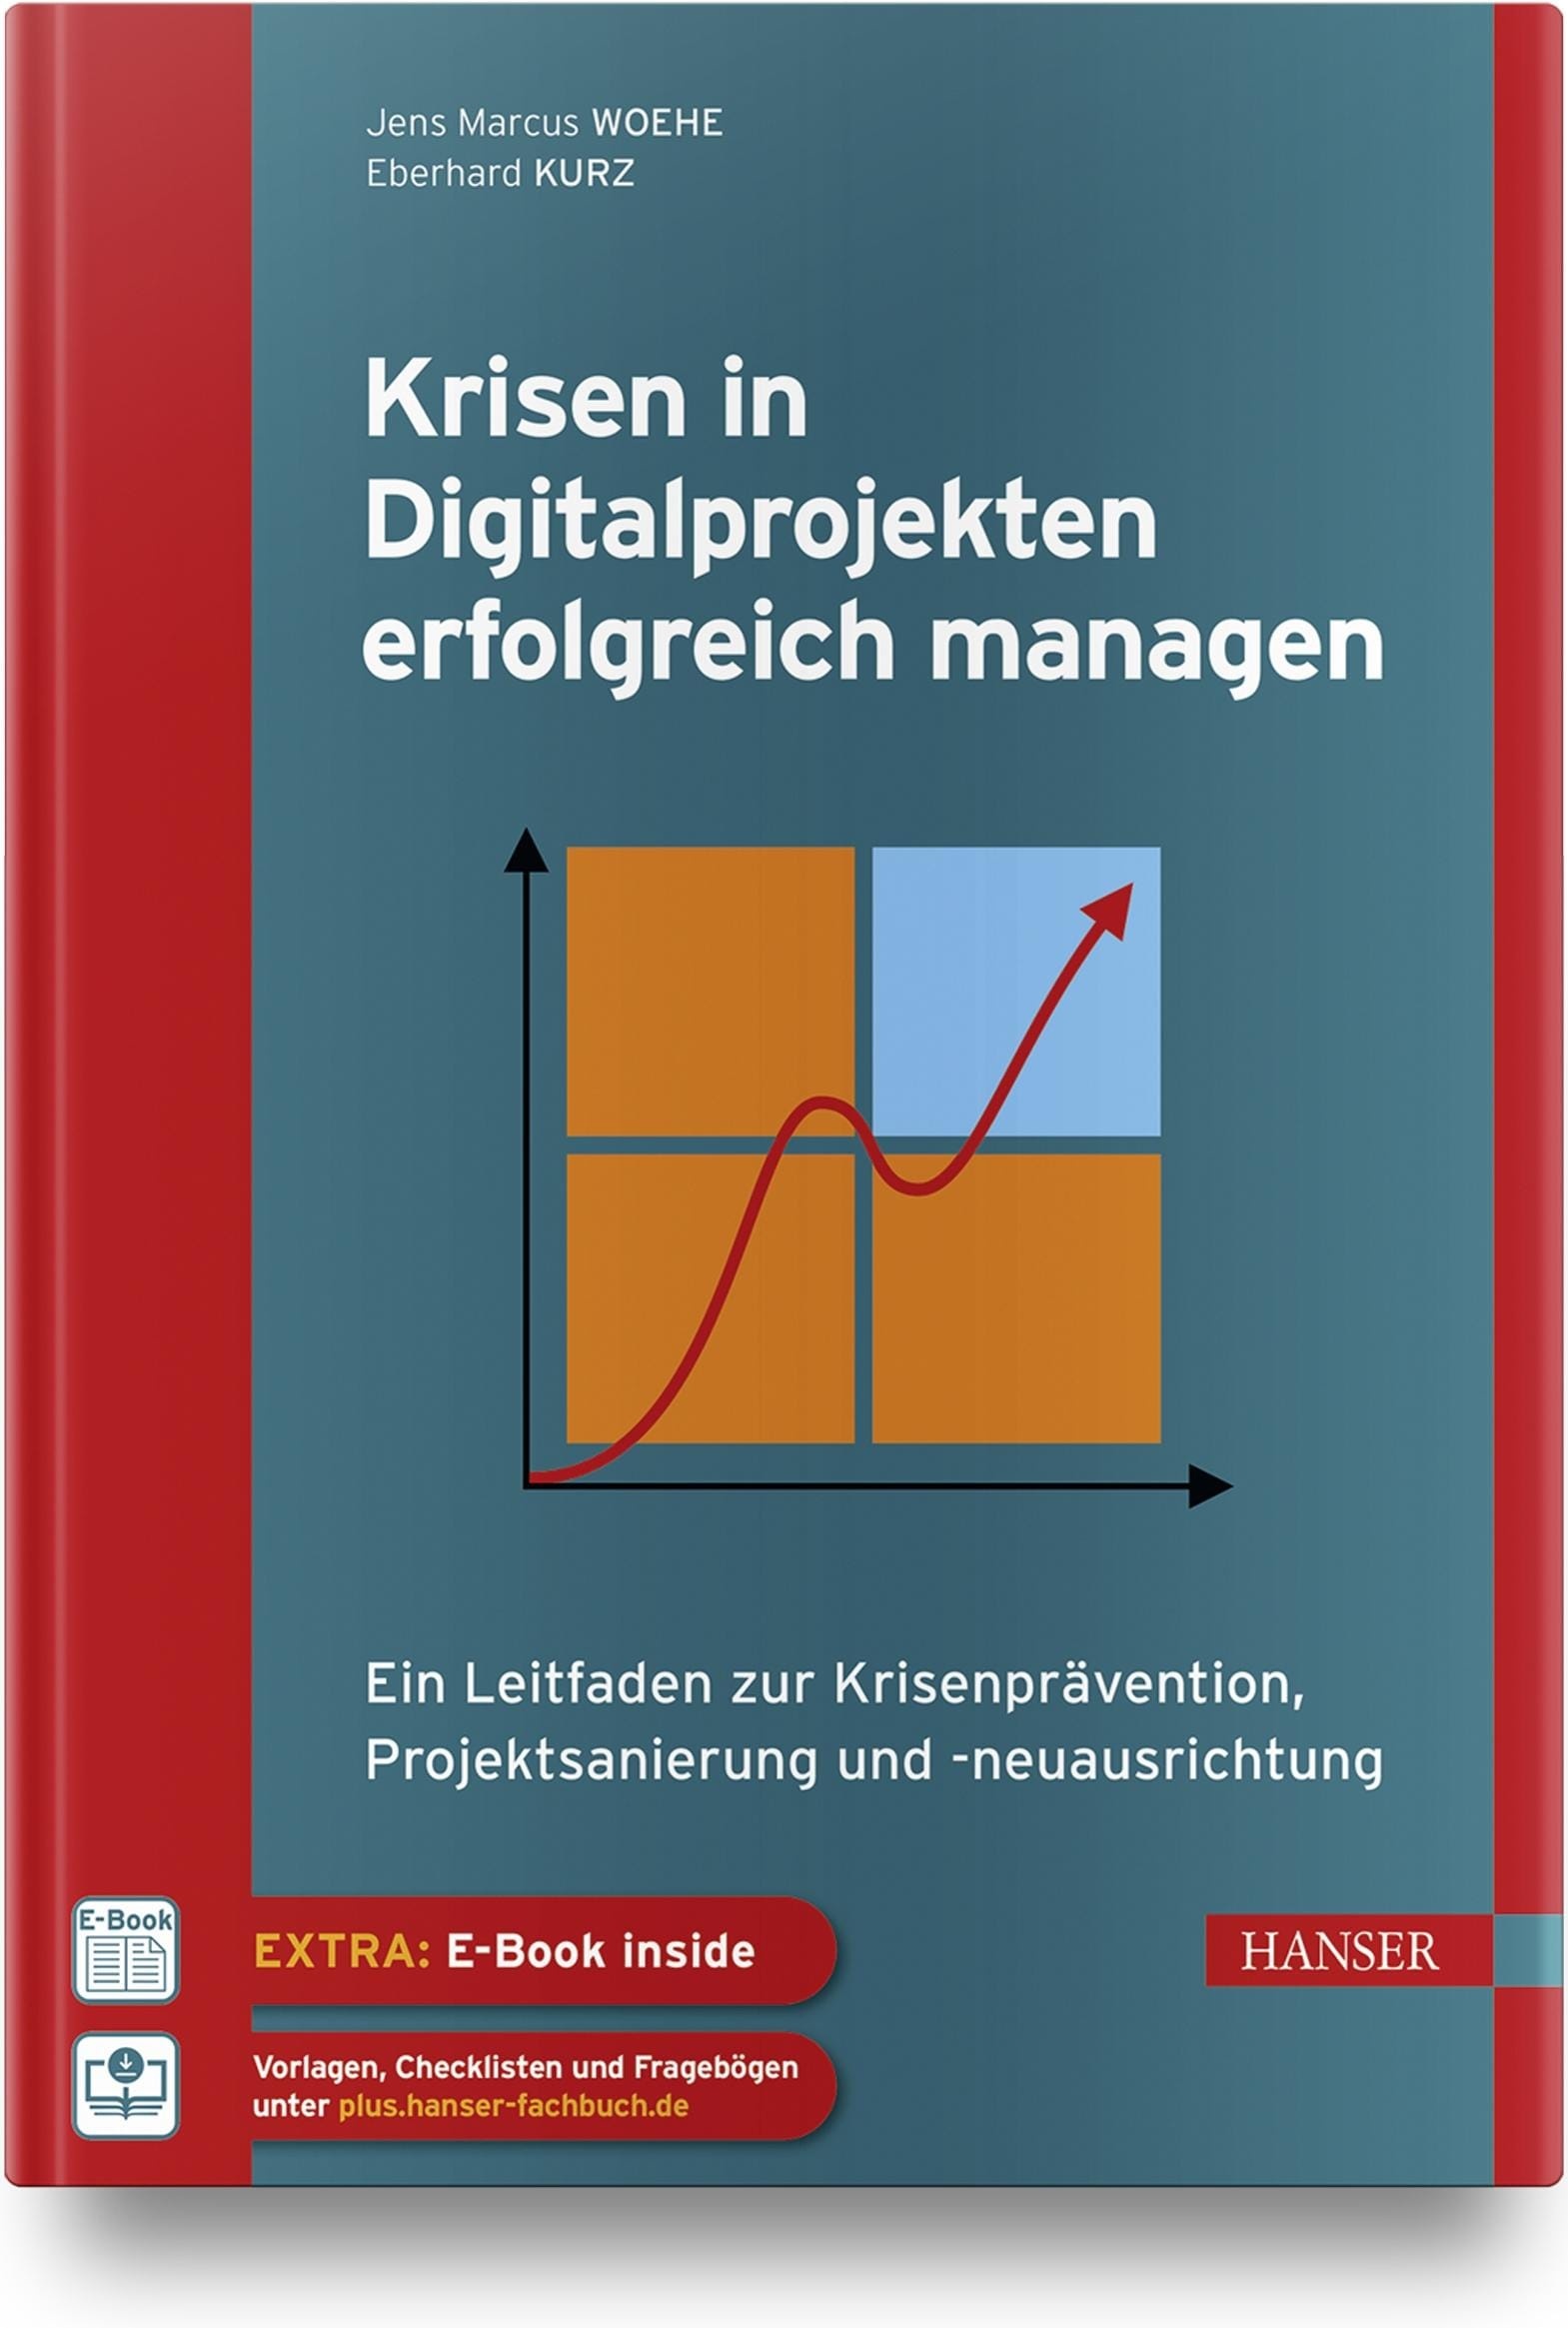 Krisen in Digitalprojekten erfolgreich managen, Fachbücher von Jens M. Woehe